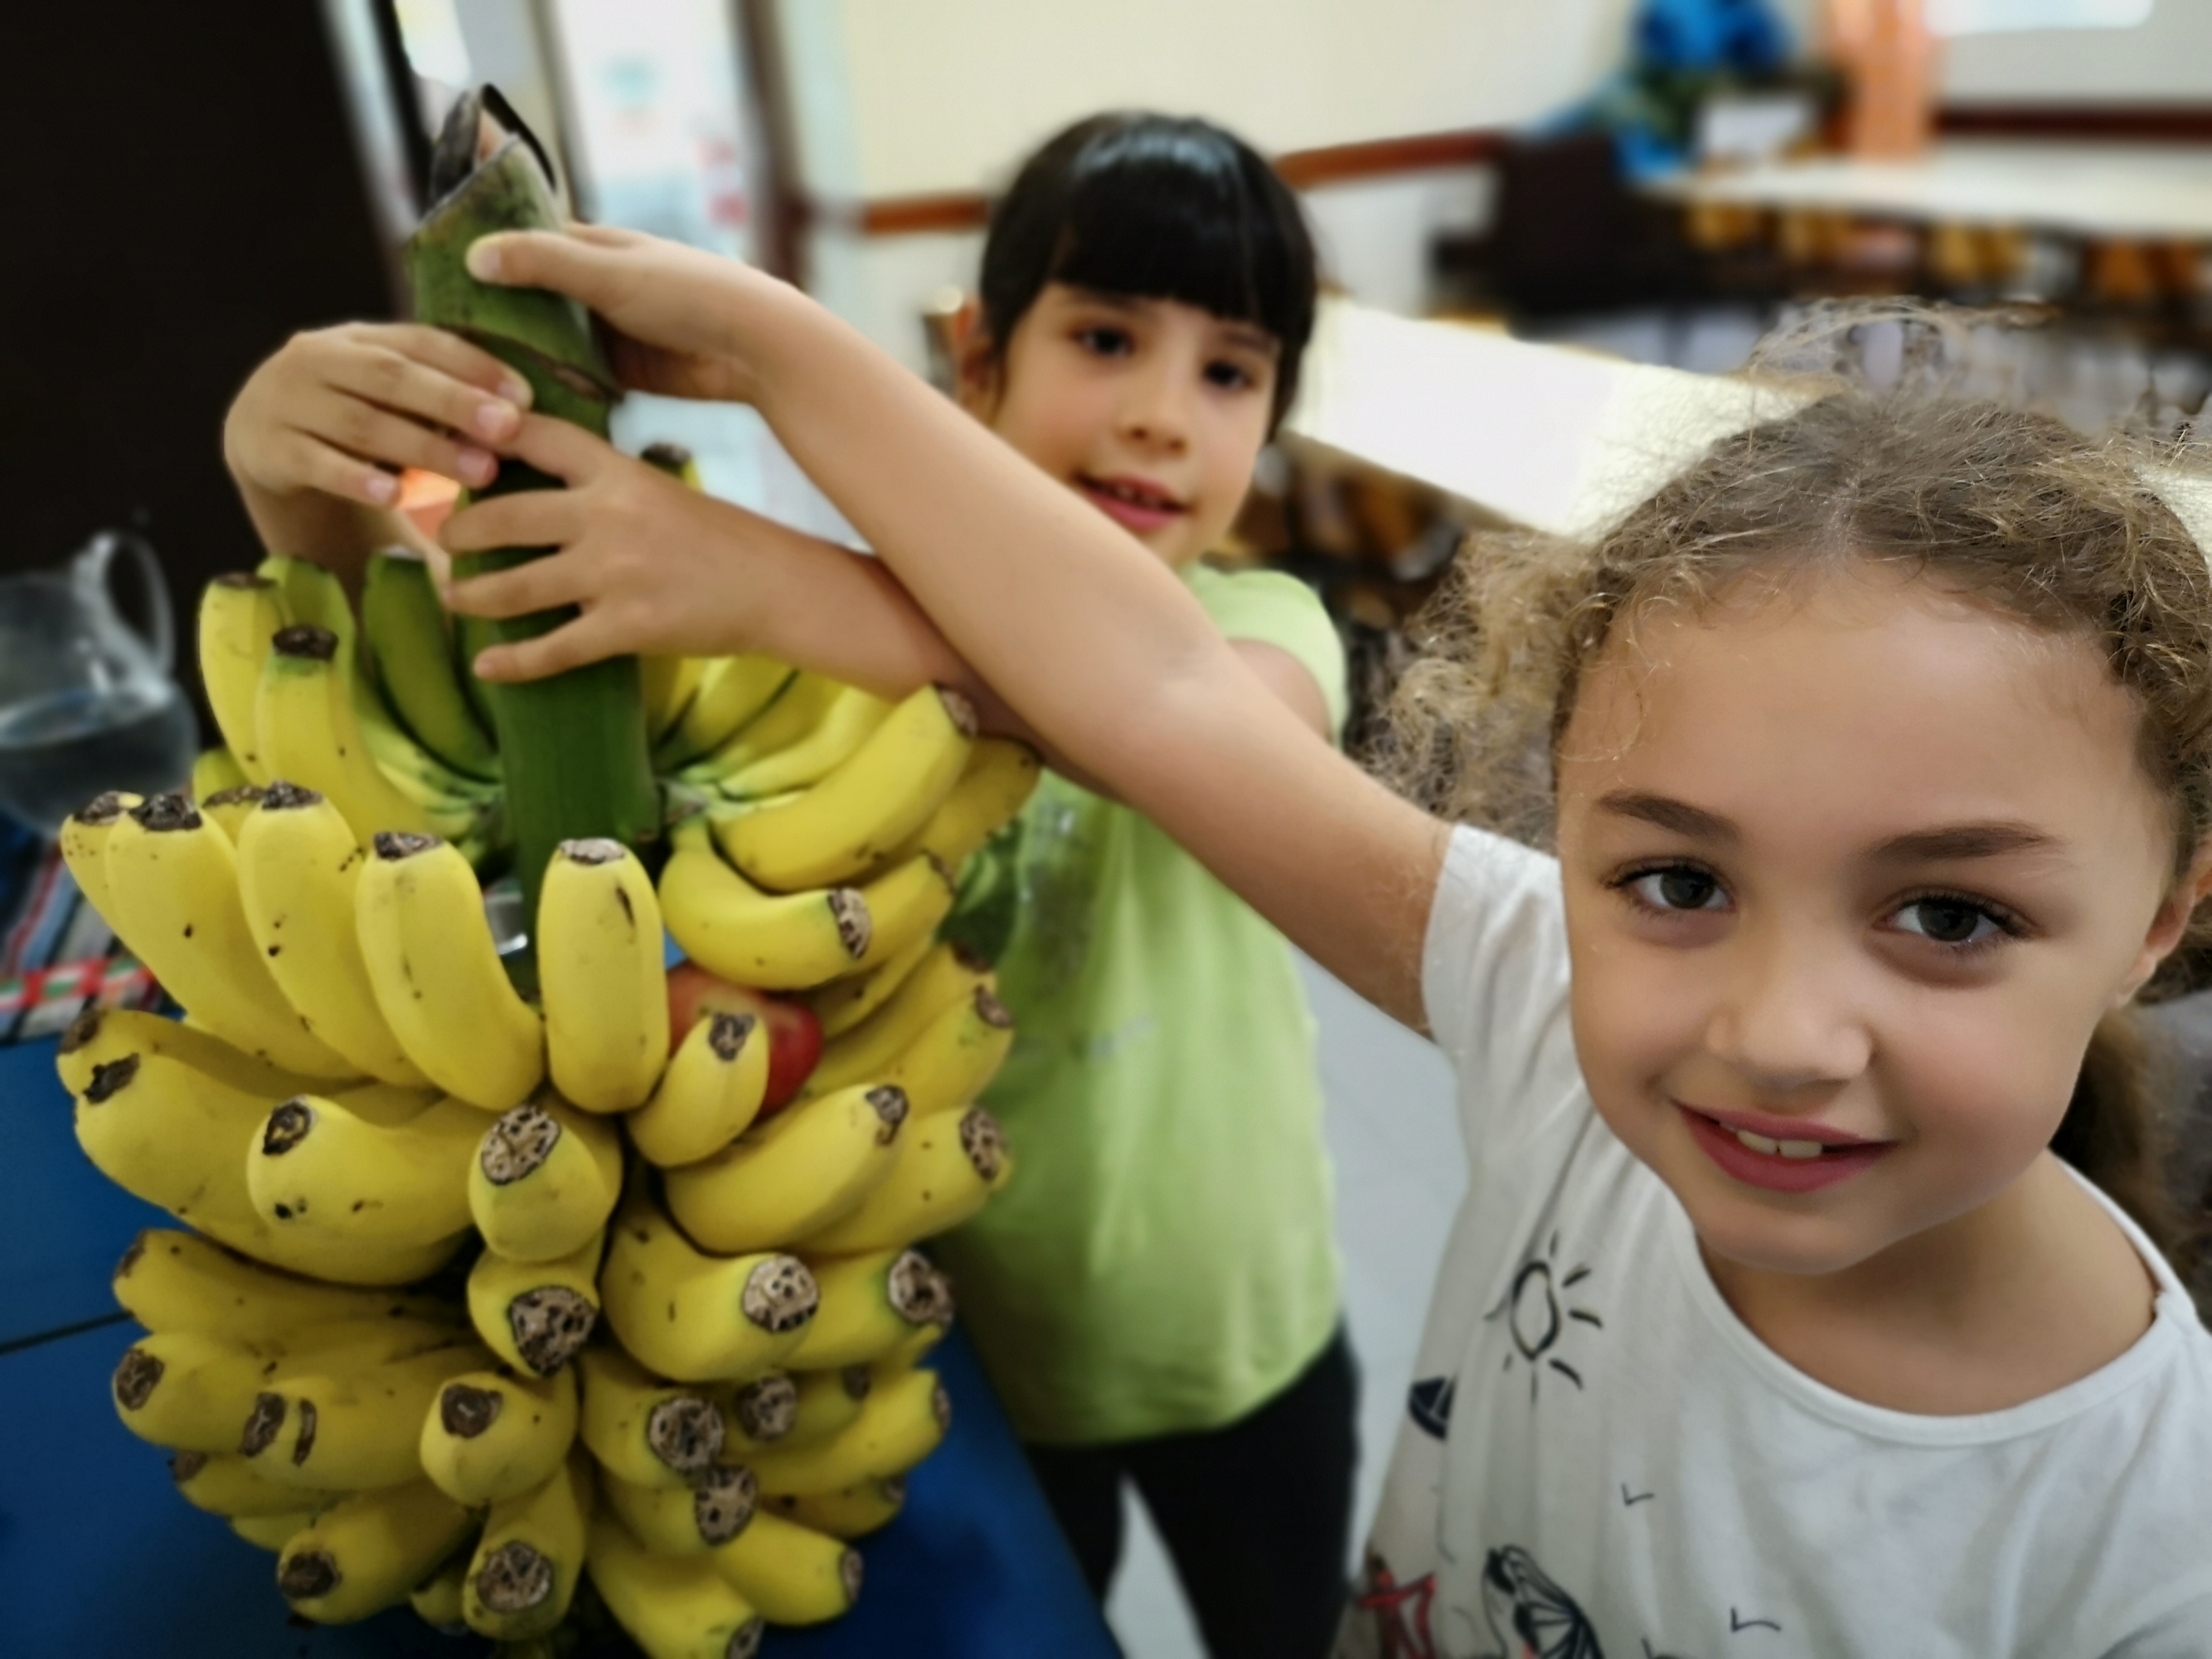 Cacho de bananas prata para distribuir pelos alunos ao lanche